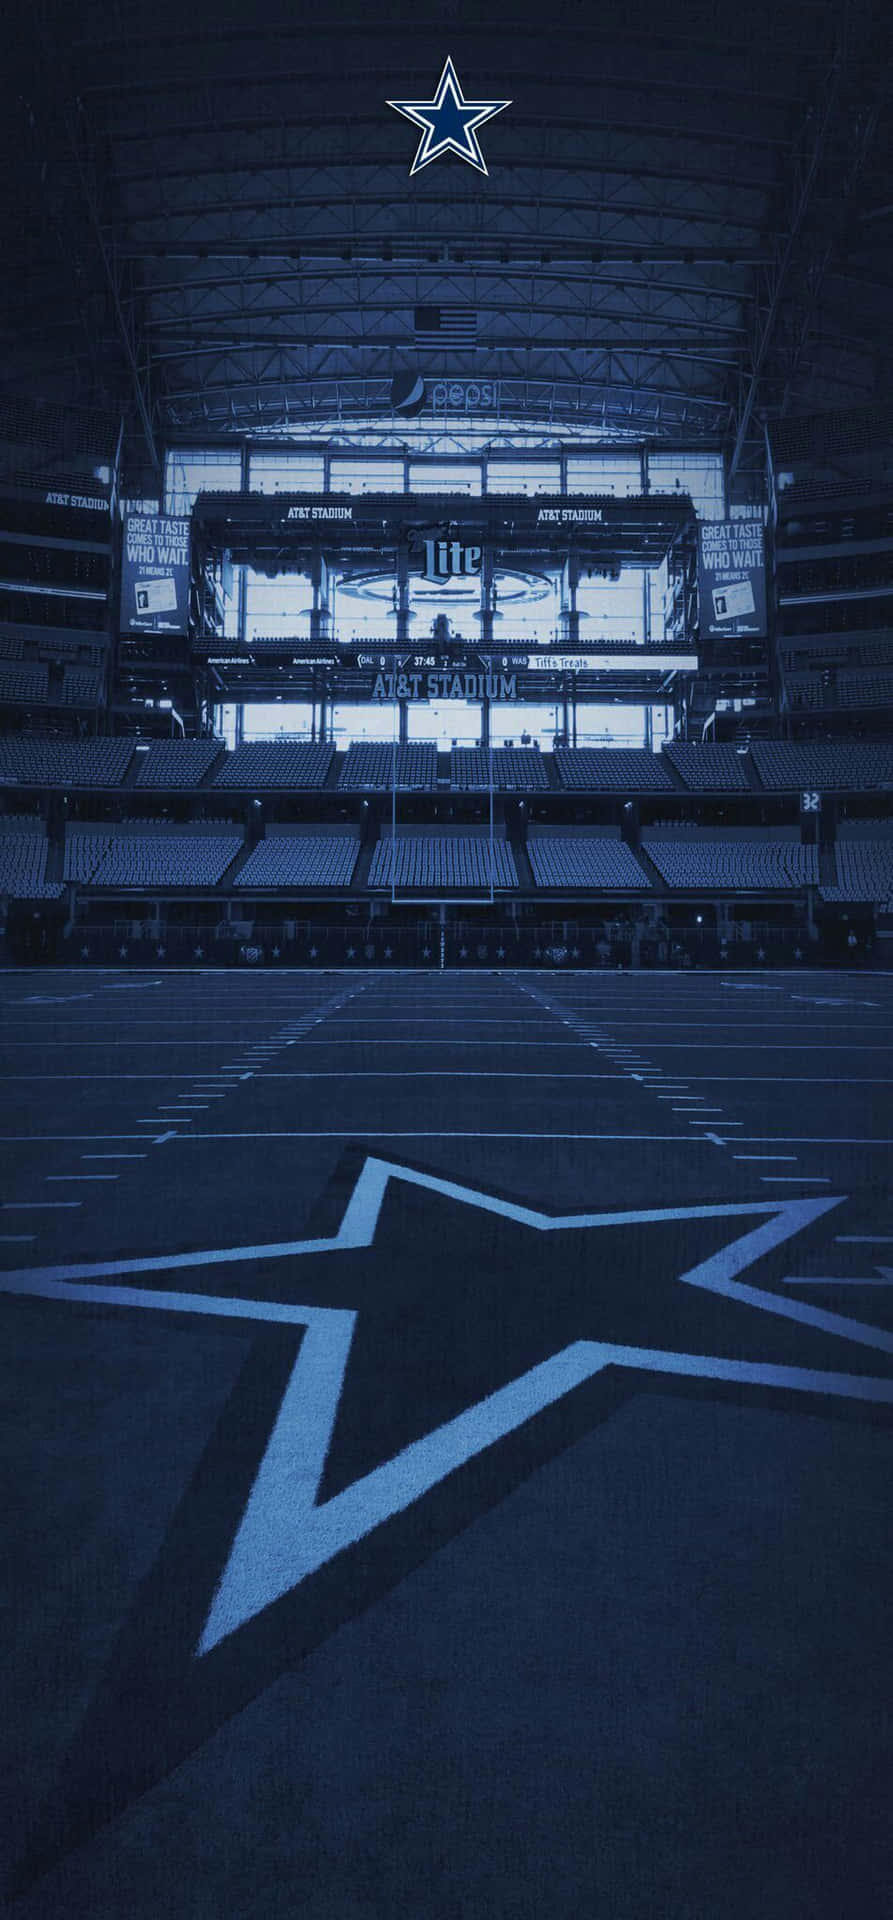 Stadiumder Dallas Cowboys Für Das Iphone. Wallpaper